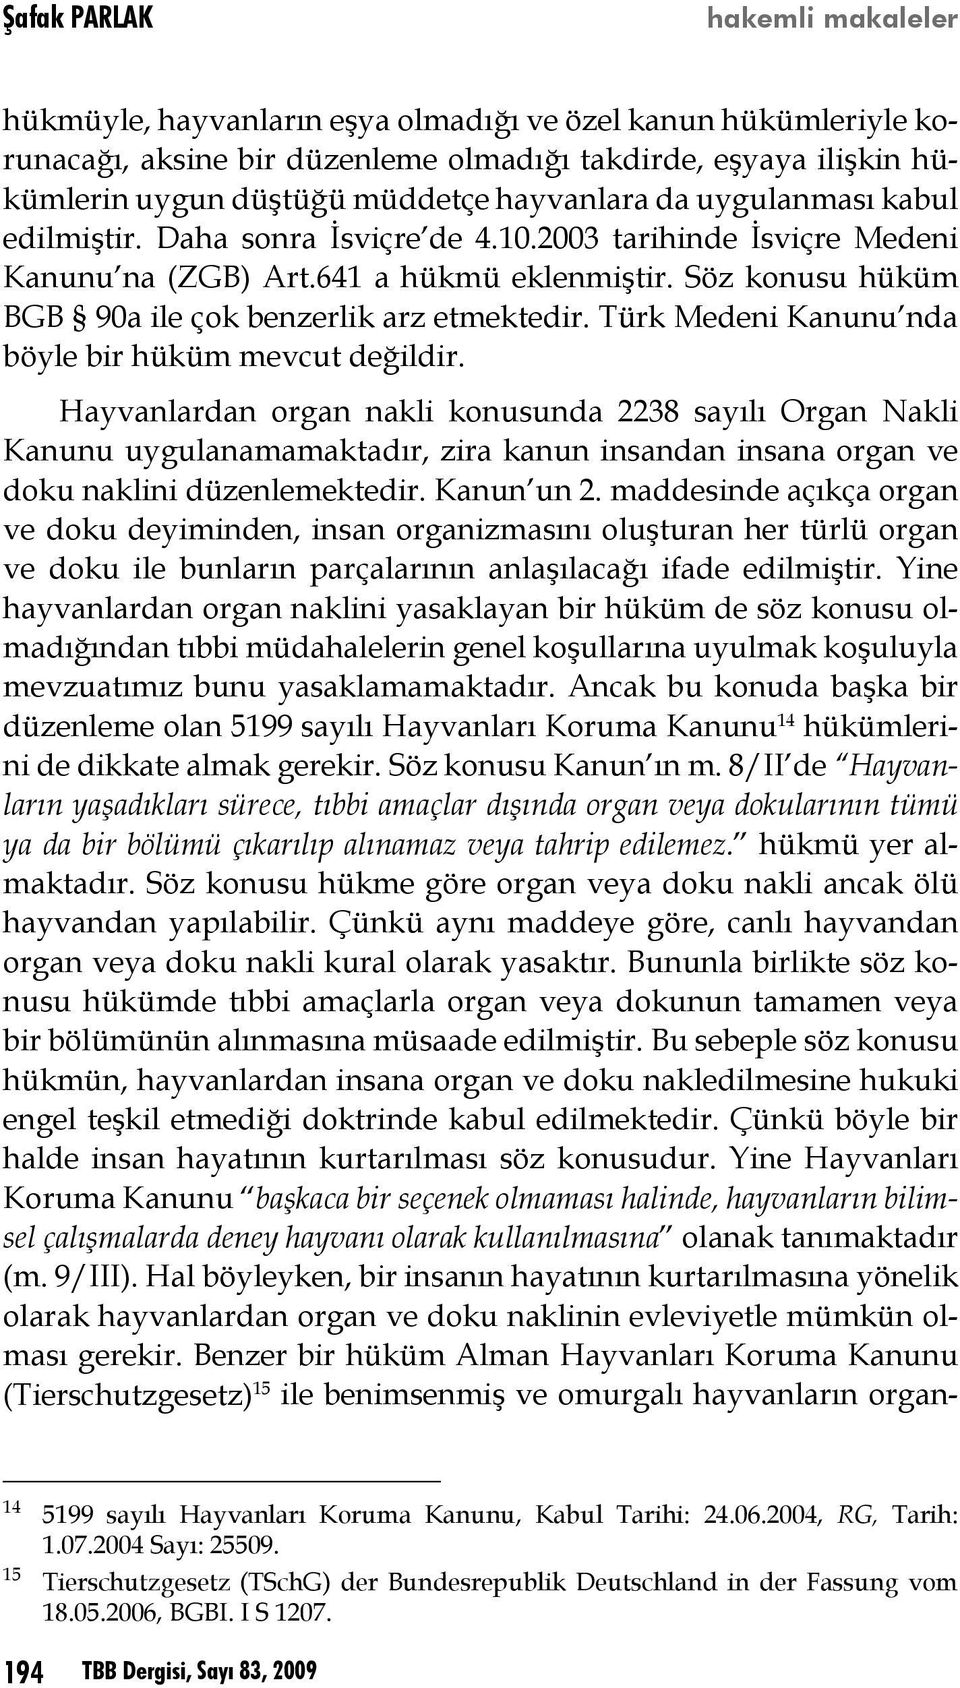 Söz konusu hüküm BGB 90a ile çok benzerlik arz etmektedir. Türk Medeni Kanunu nda böyle bir hüküm mevcut değildir.